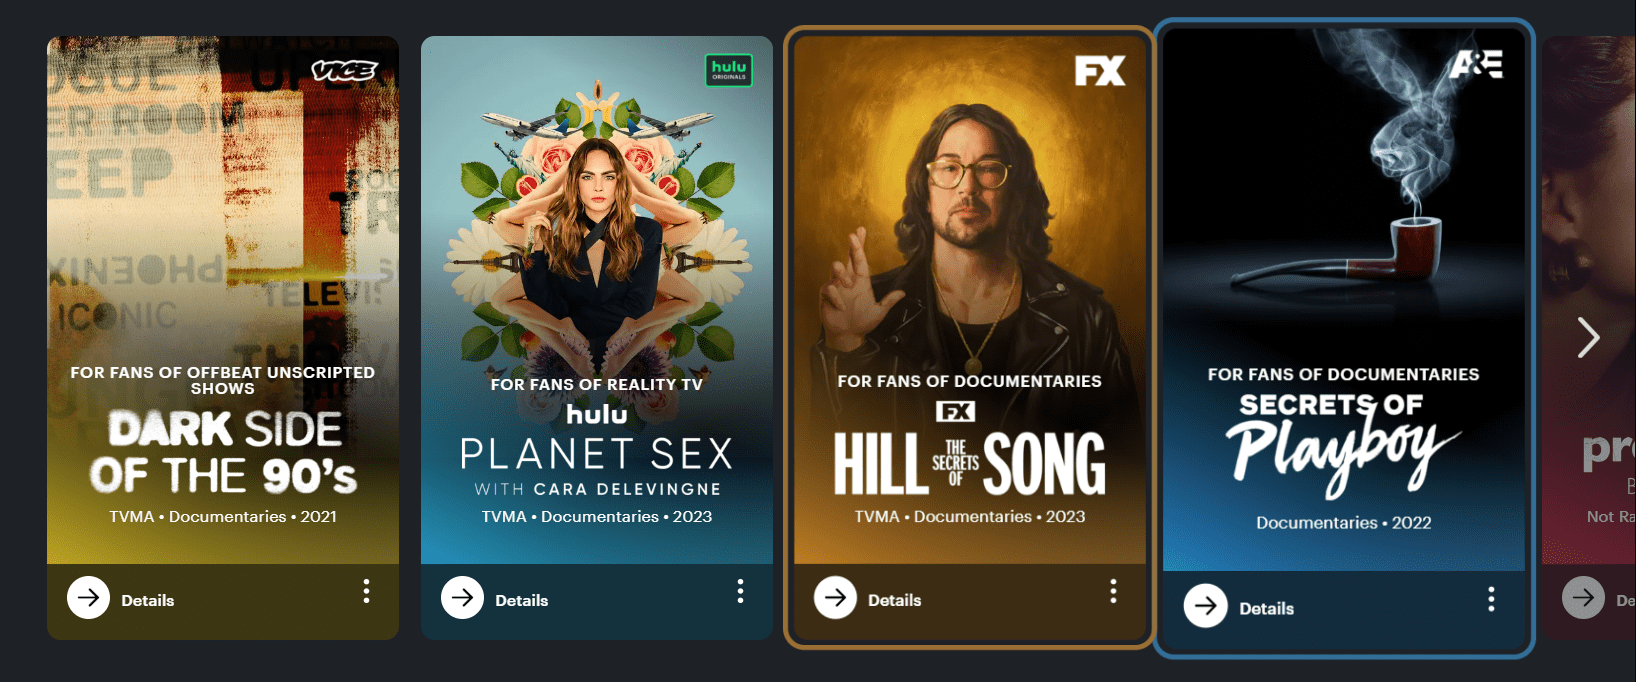 Hulu in Brazil - documentaries